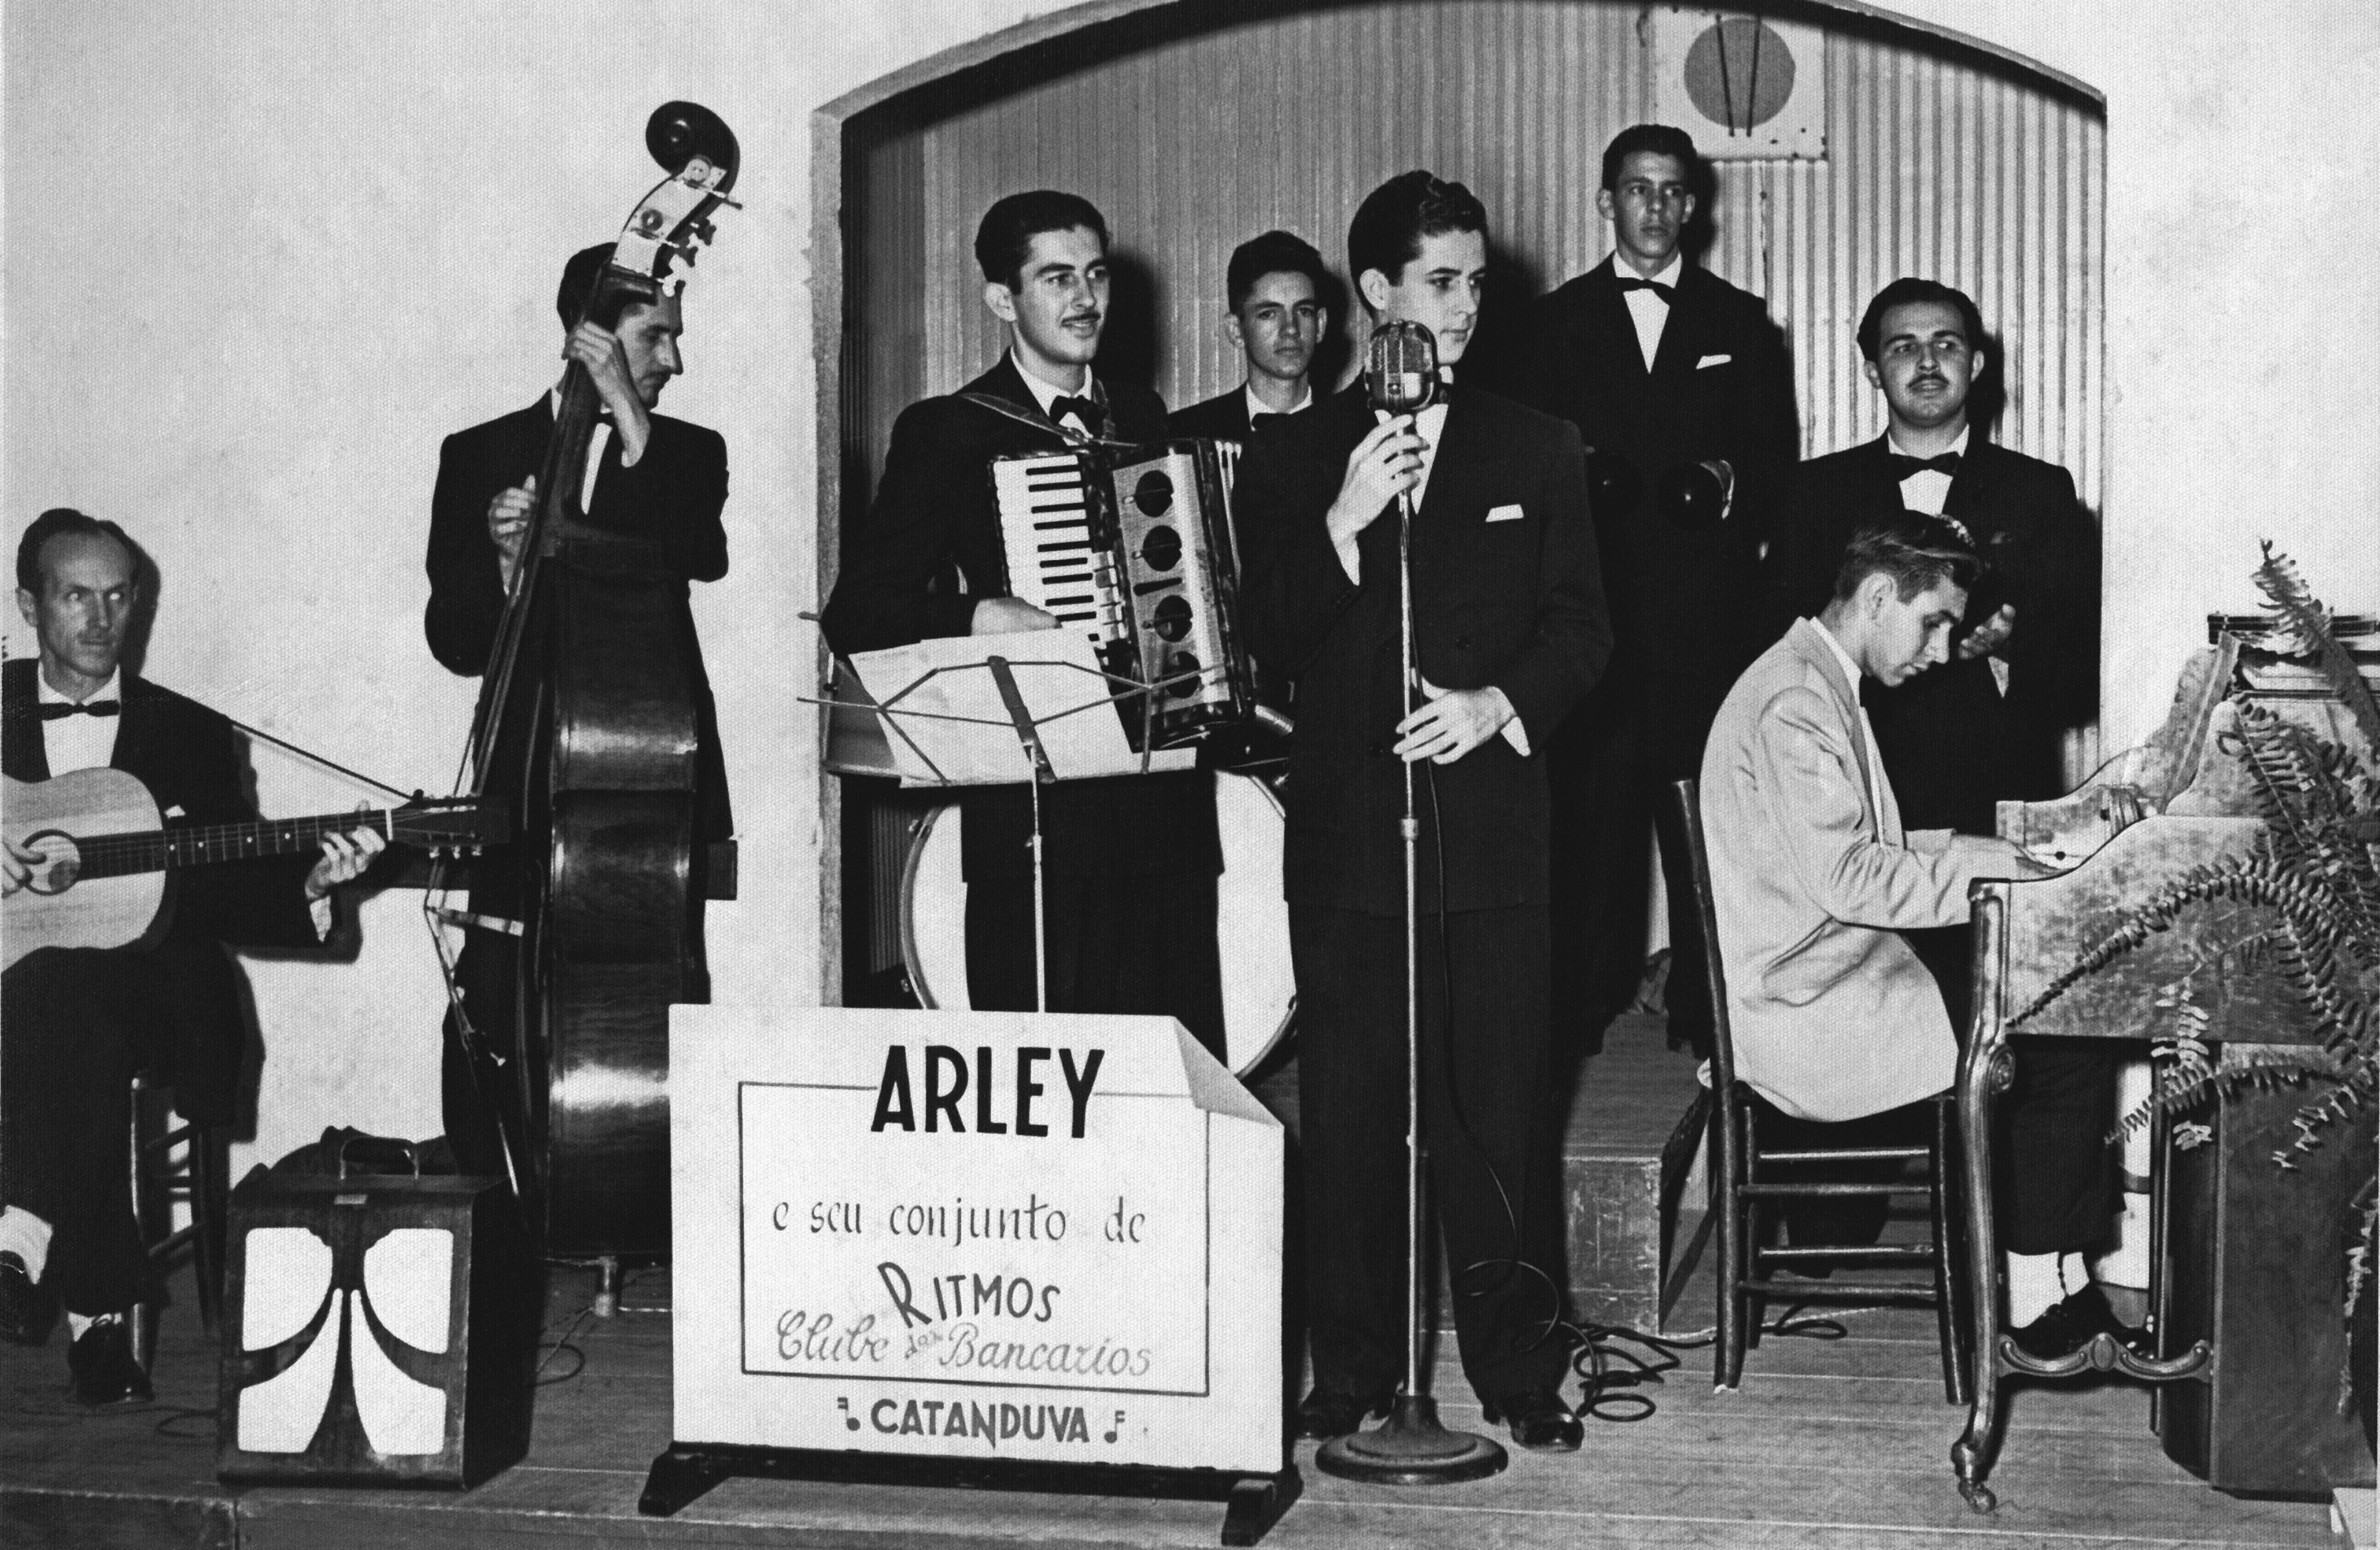 Arley e seu Conjunto de Ritmos, de Catanduva, em 1956